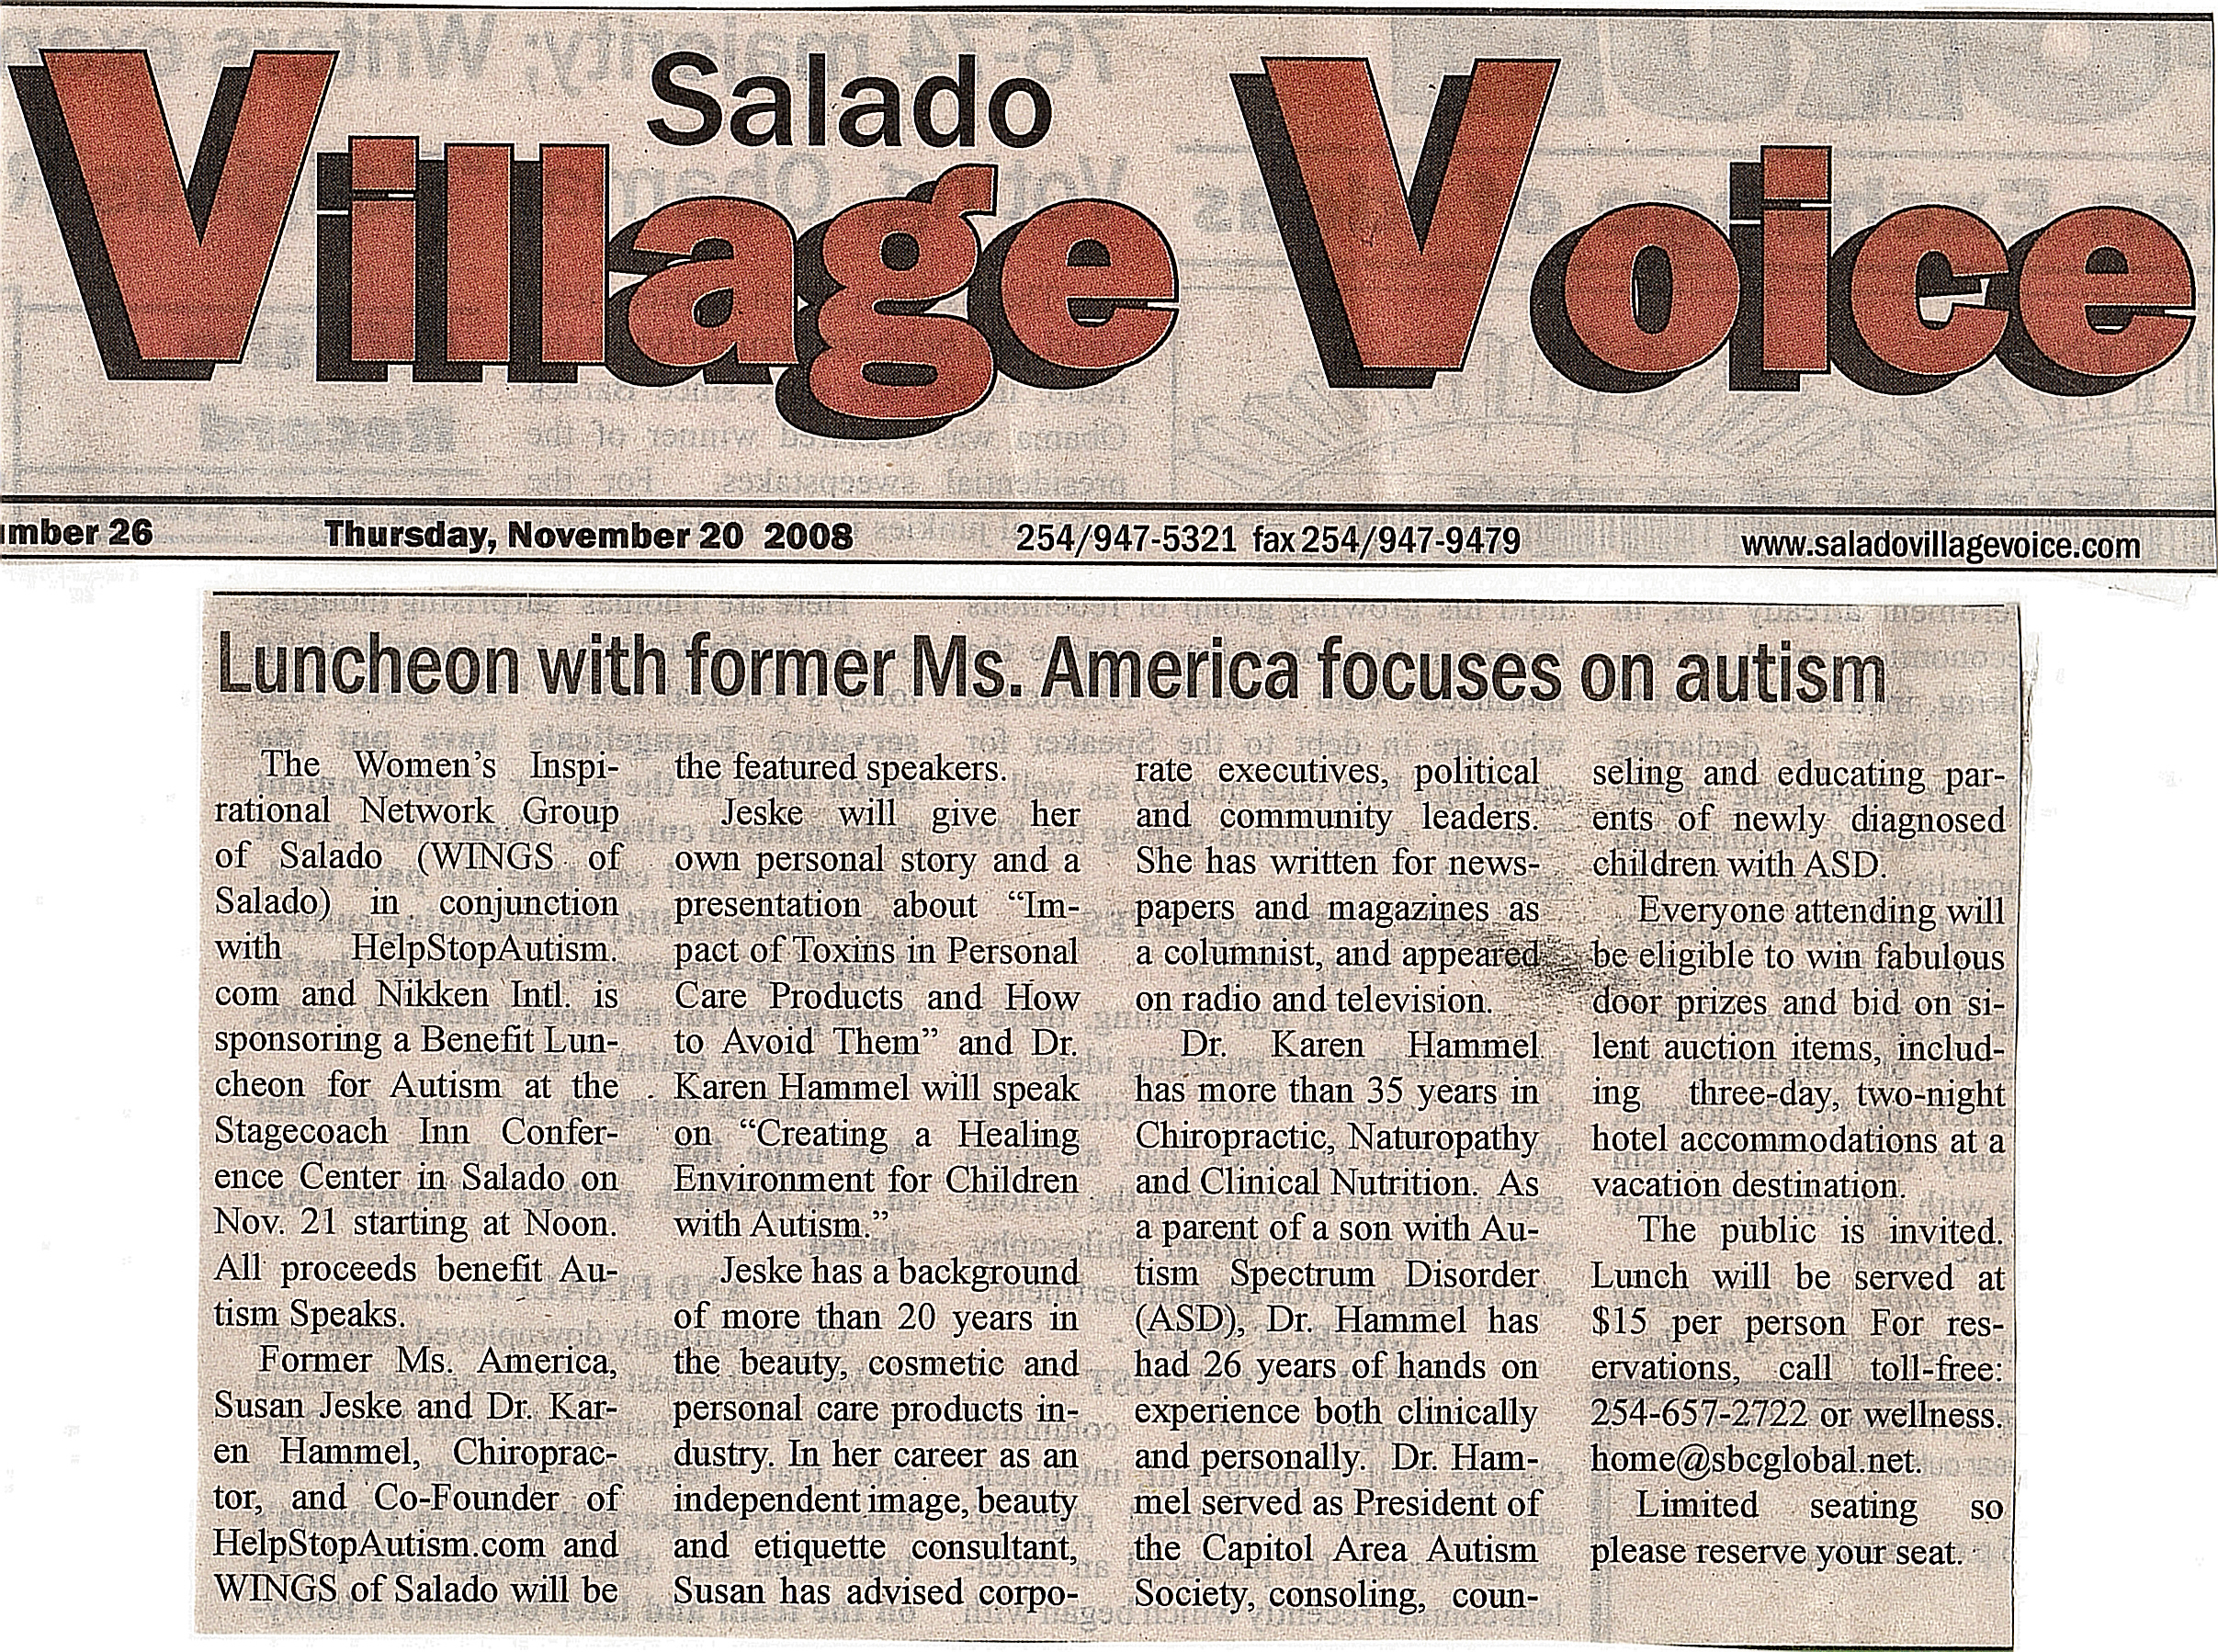 Salado Village Voice News